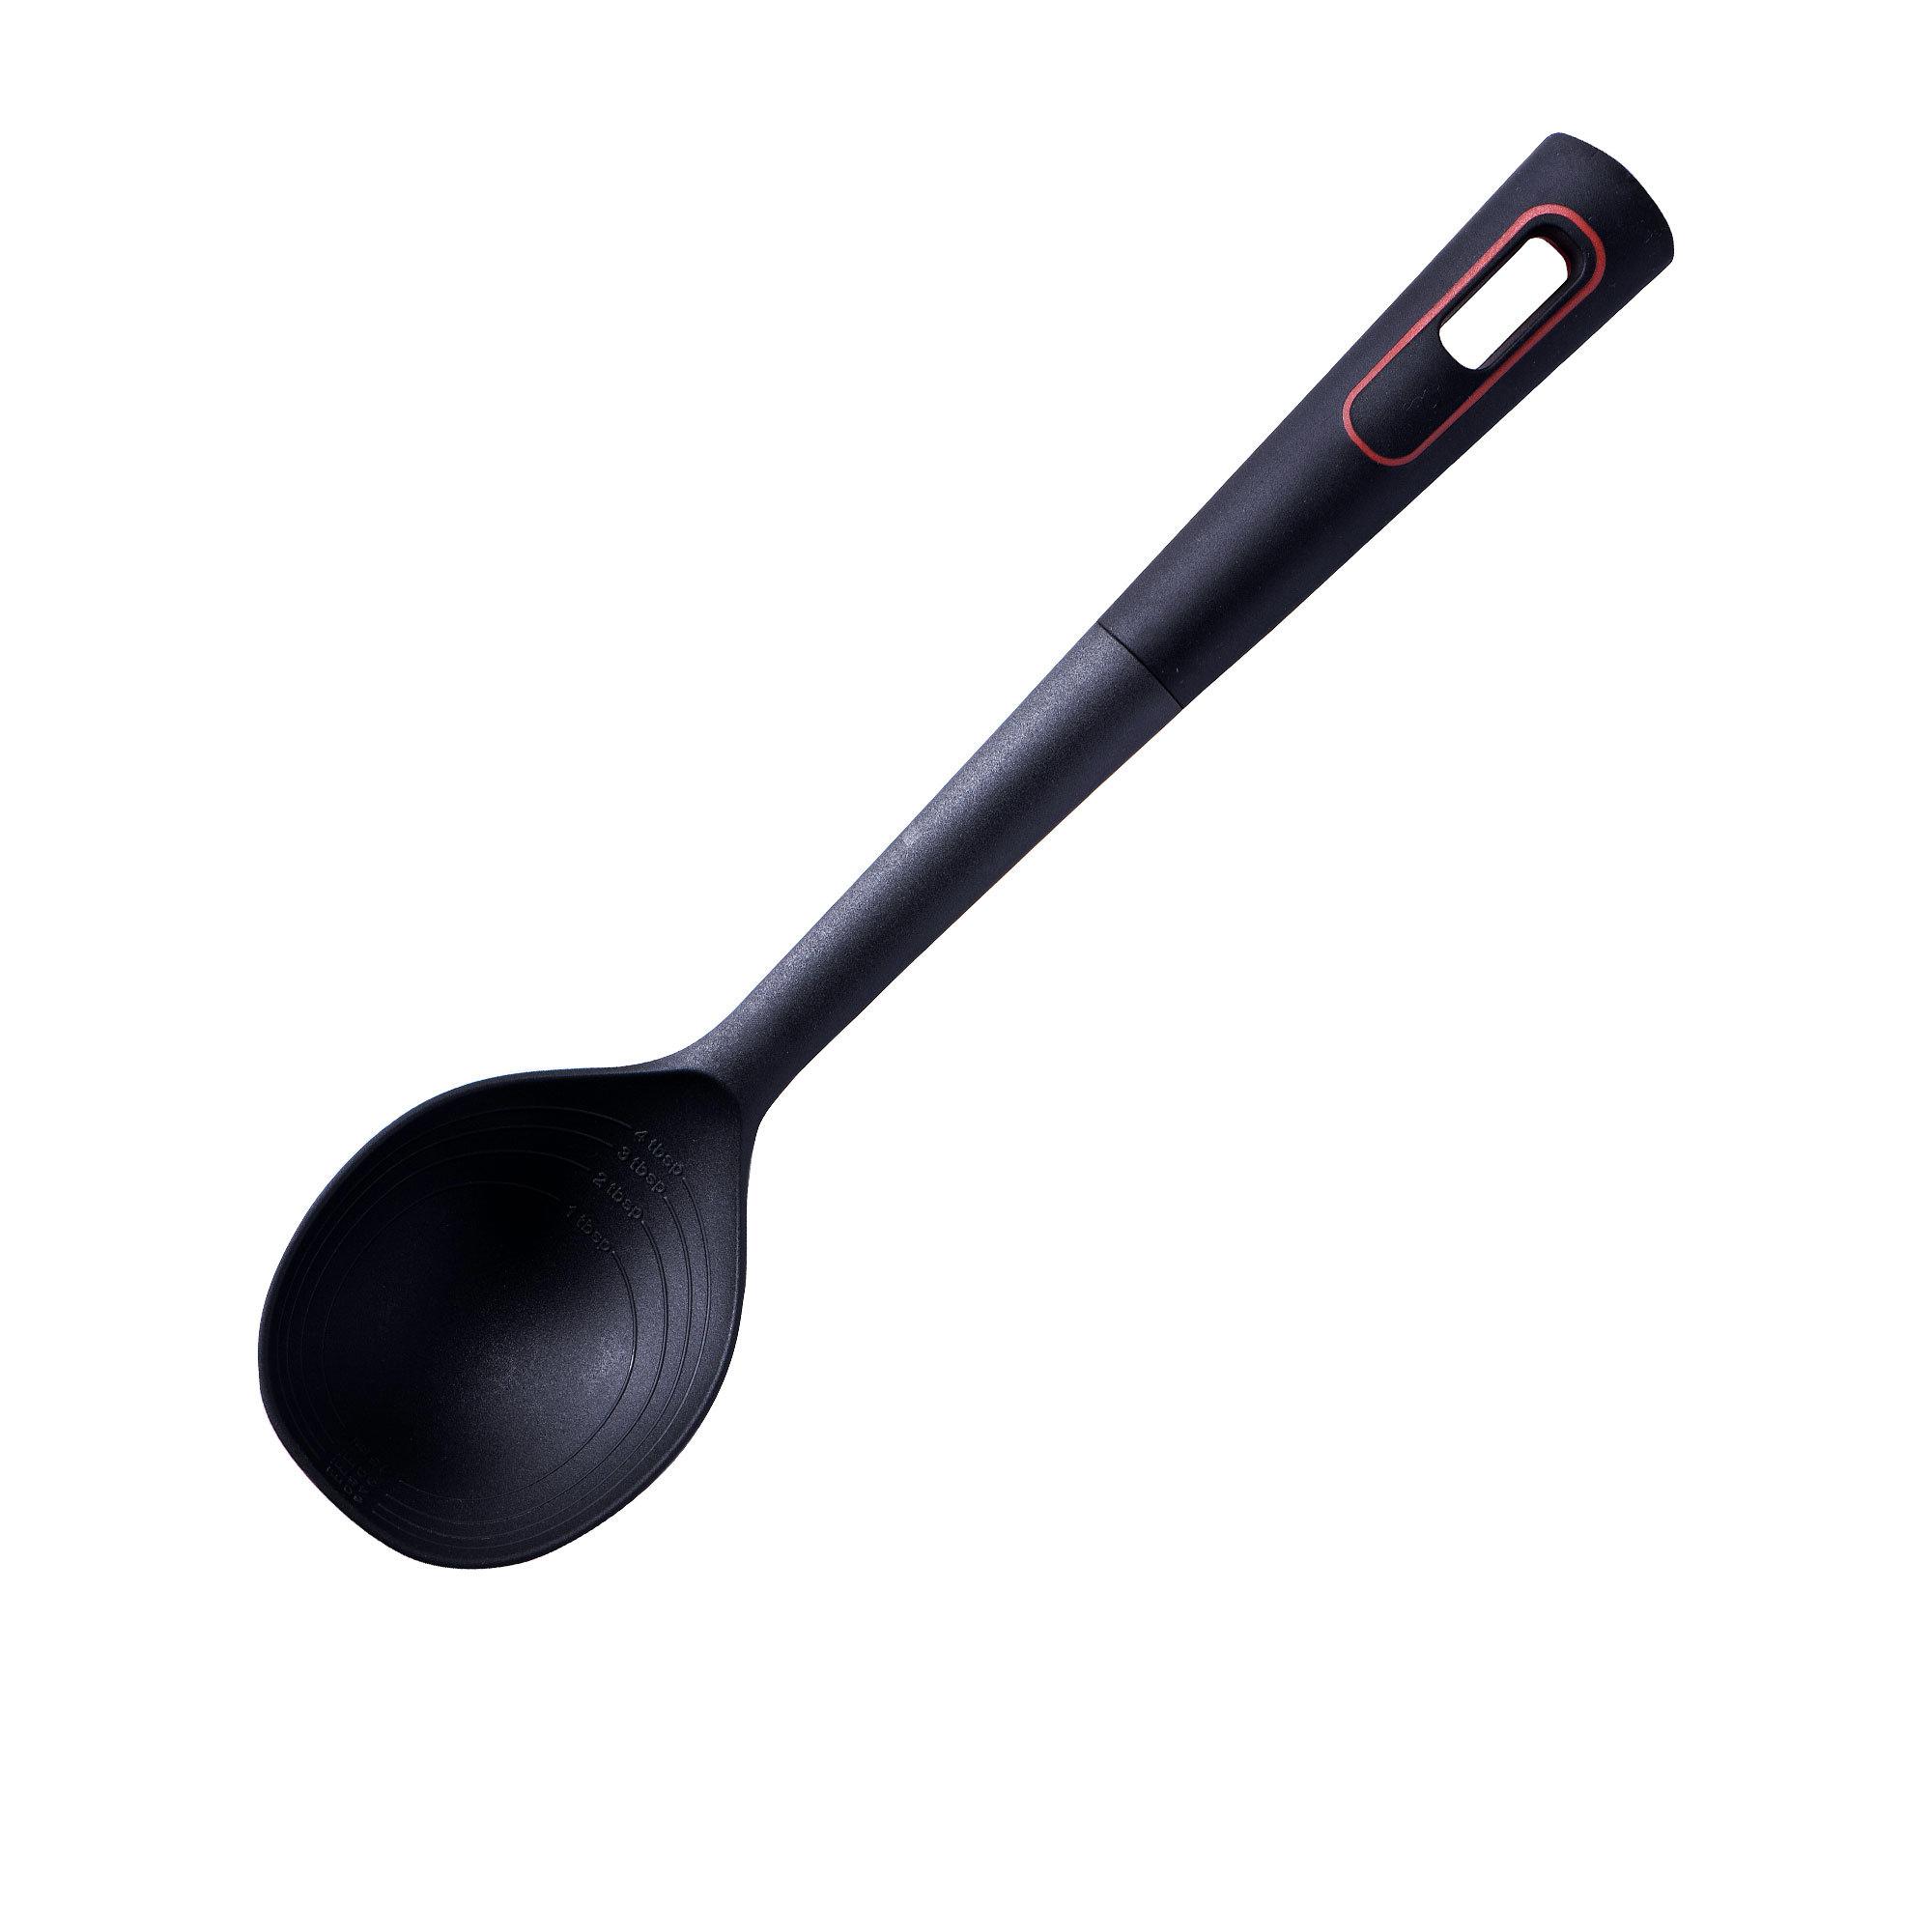 Avanti Nylon Multi-in-1 Spoon Image 1